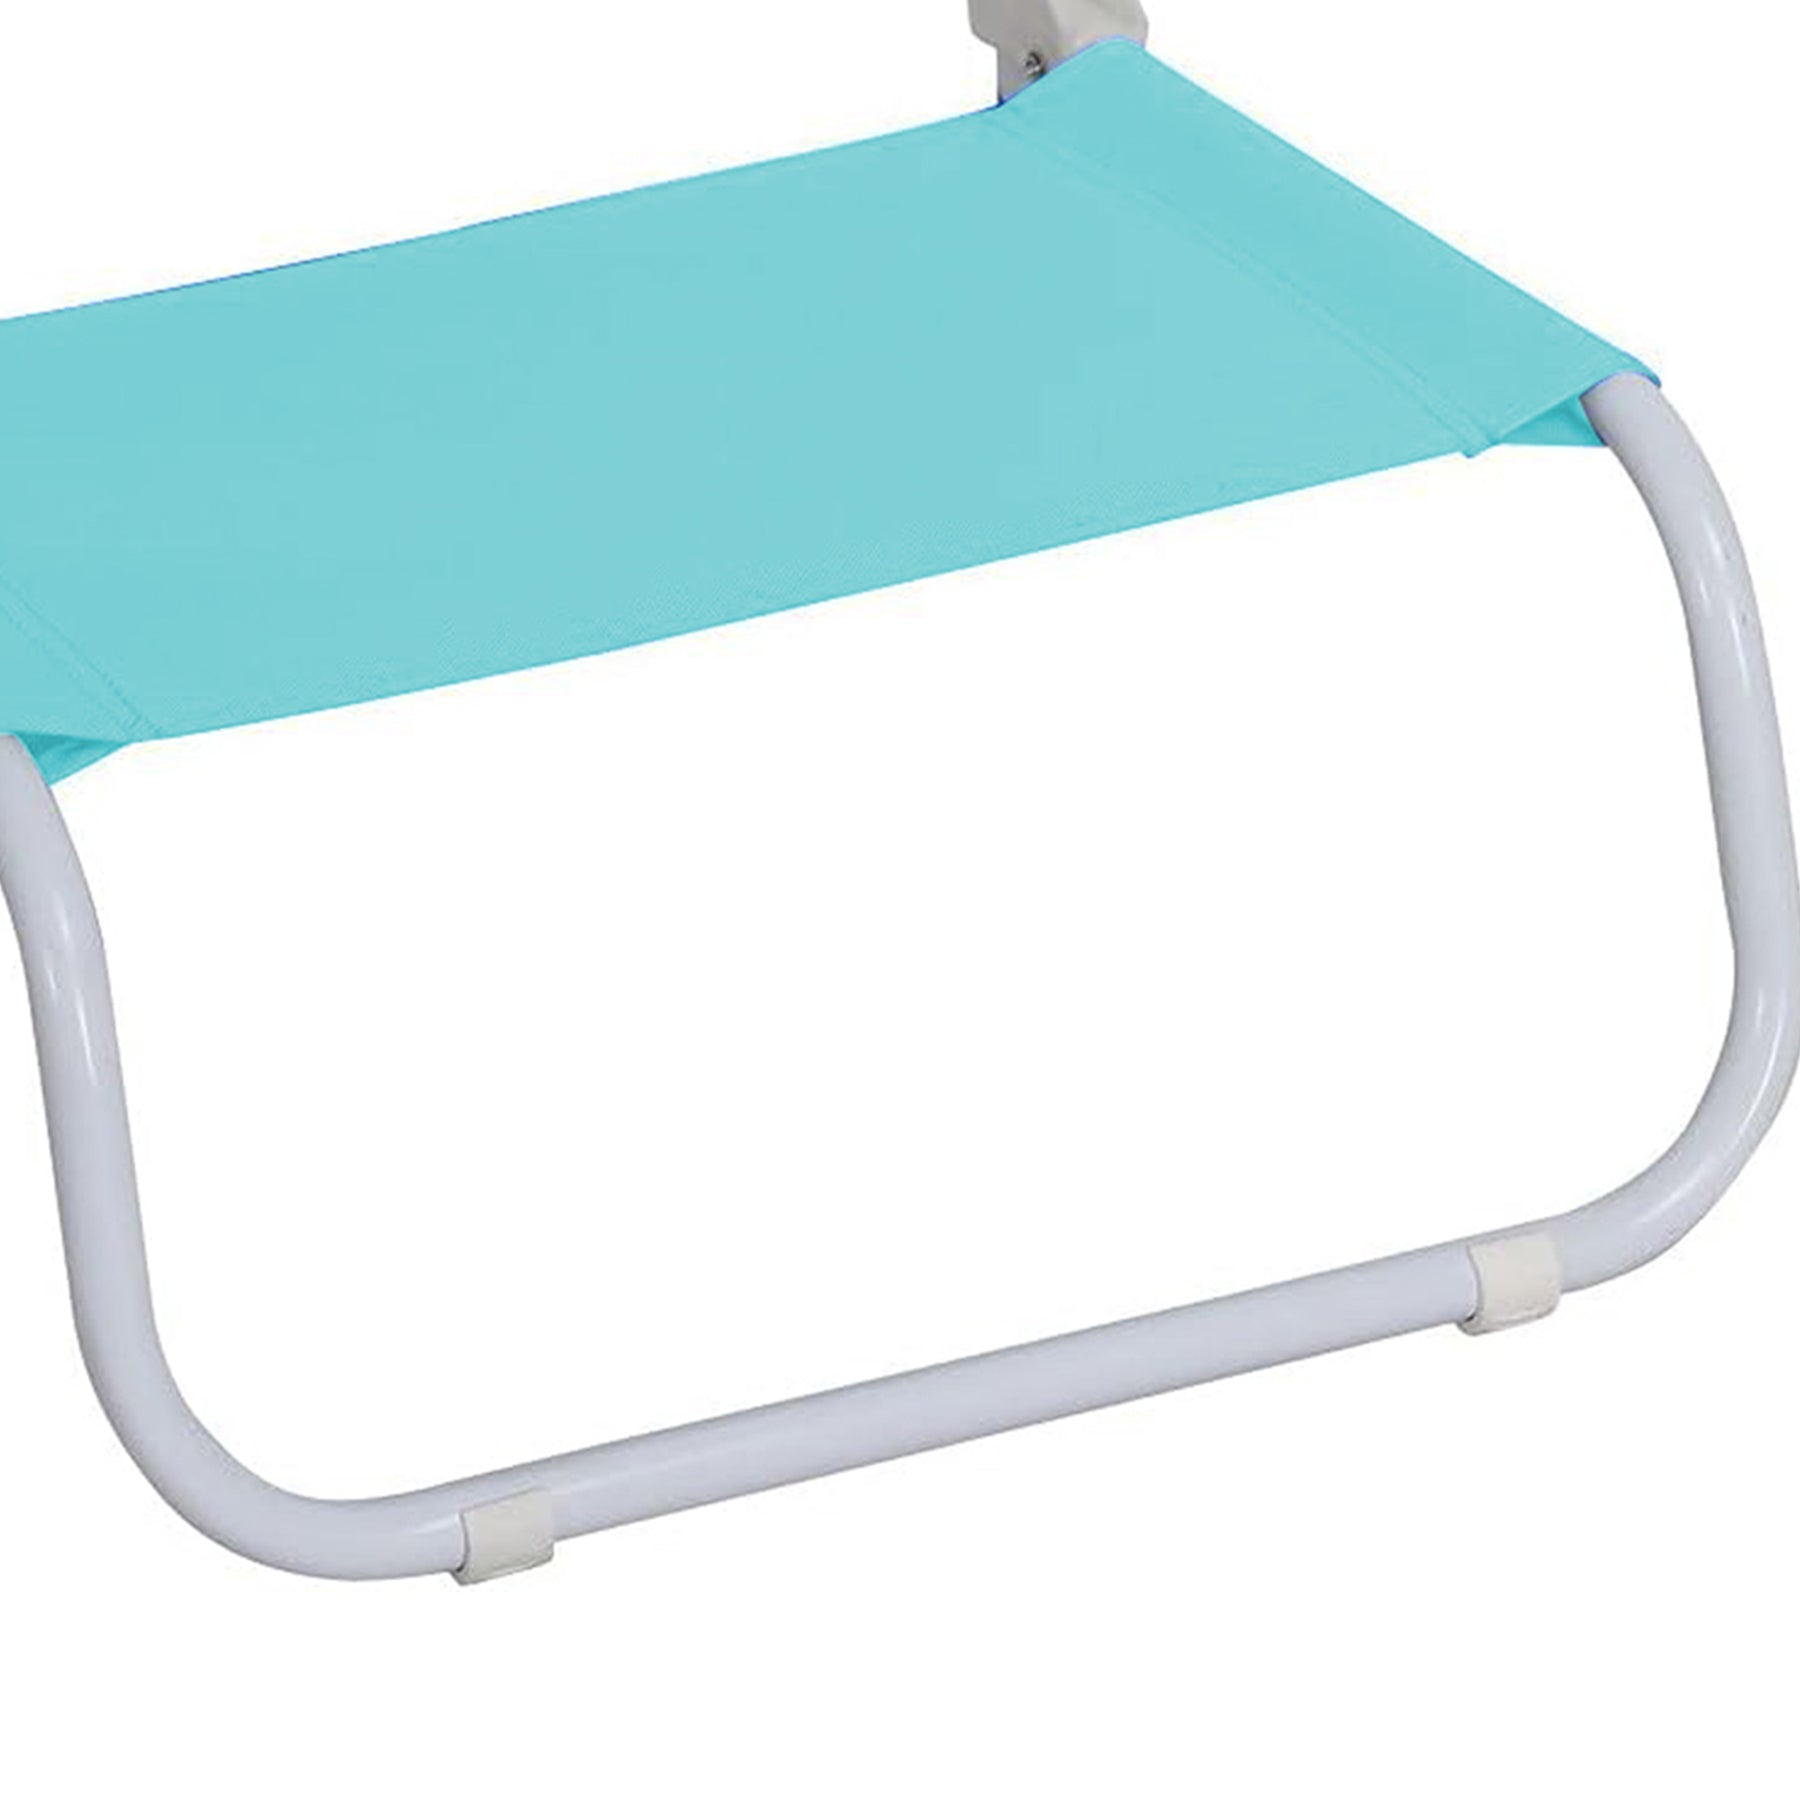 كرسي شاطئ أرضي قابل للطي ،لون أزرق فاتح الحجم: 50x45x50سم